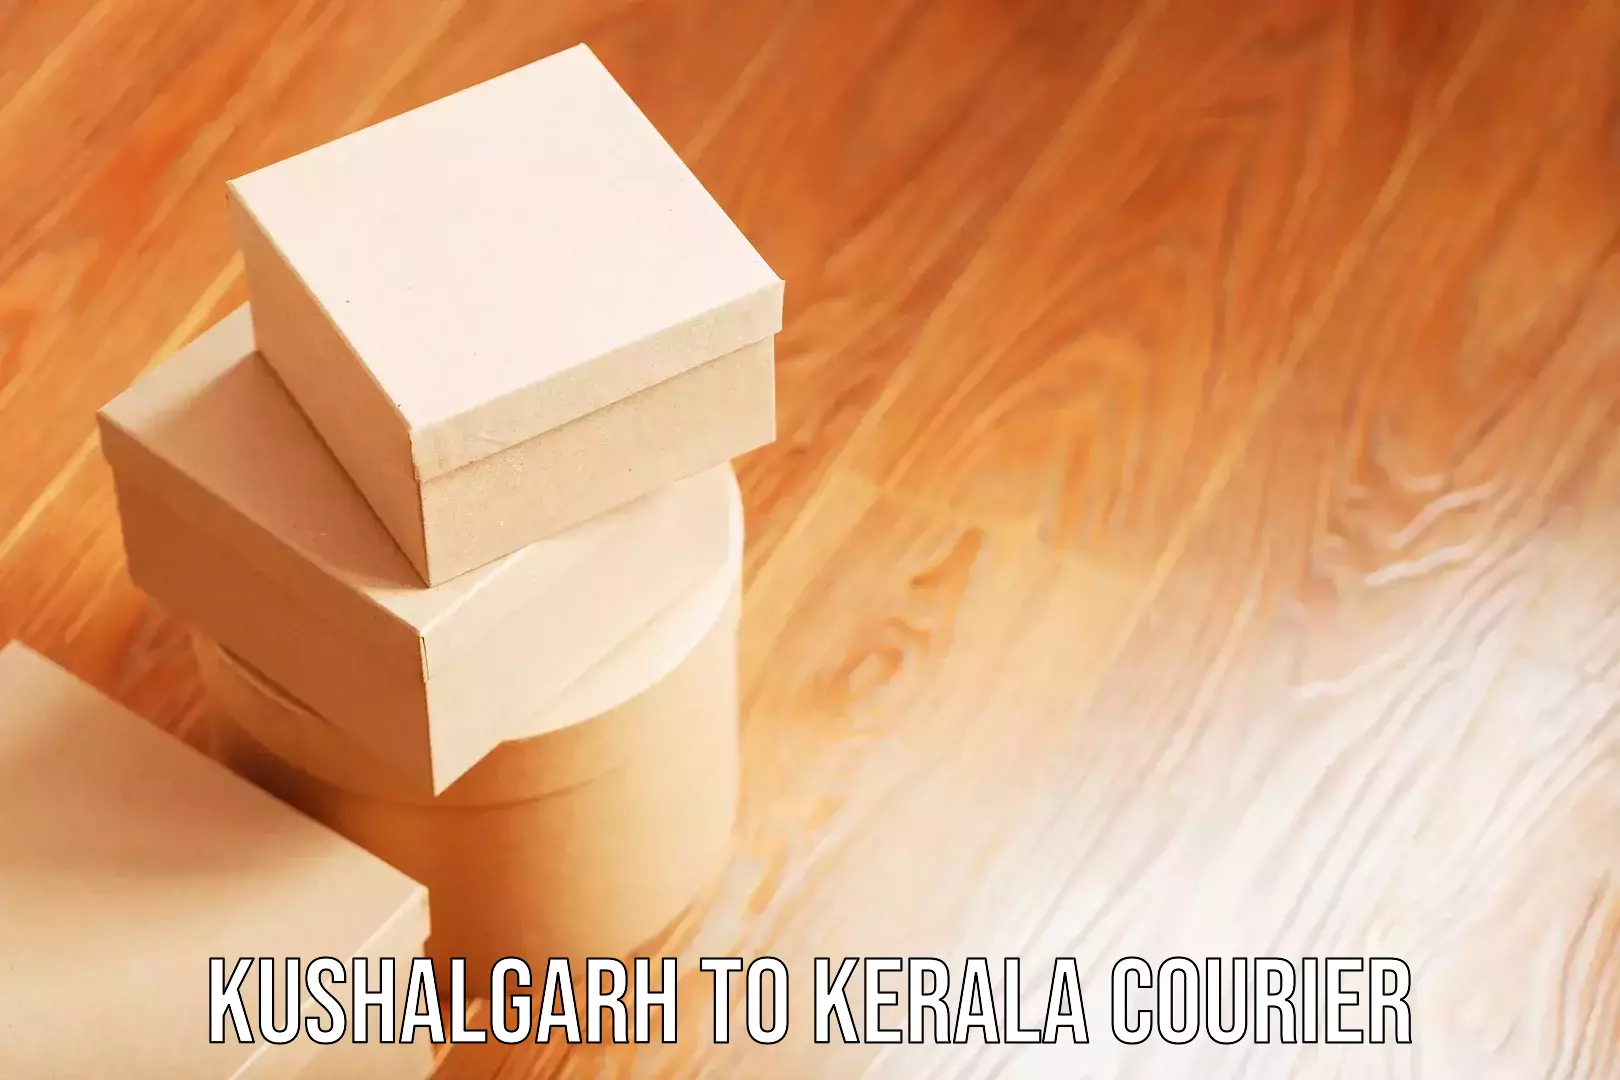 Luggage delivery logistics Kushalgarh to Kerala